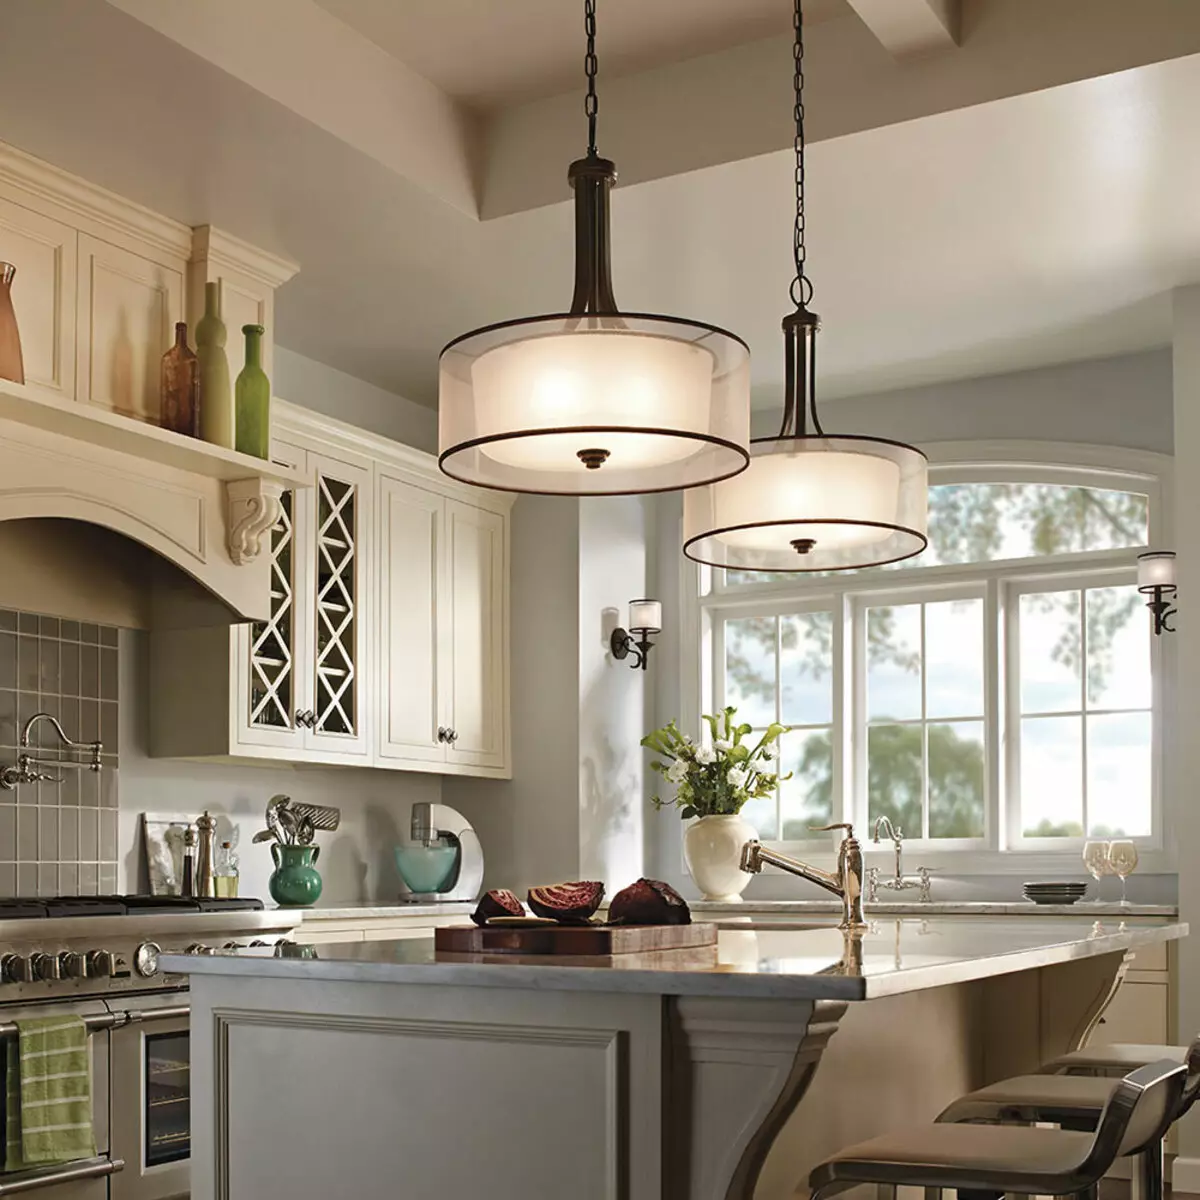 Iluminação na cozinha (52 fotos): Como organizar adequadamente a luz no interior da cozinha? Design e opções para lâmpadas no teto e paredes 21004_17